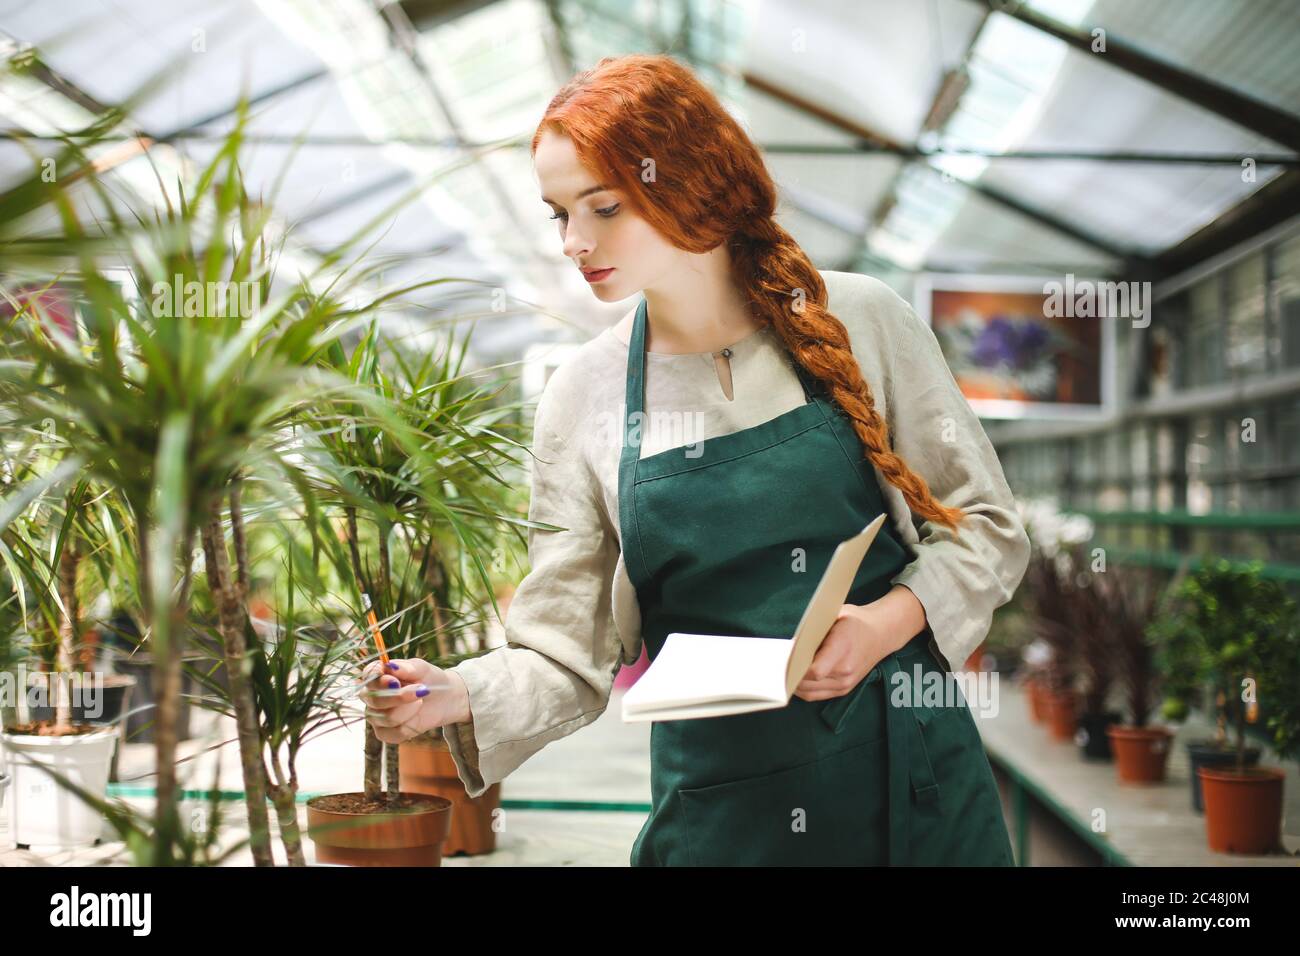 Fiorista giovane in grembiule in piedi con blocco note e matita in mani mentre lavora con piante in serra Foto Stock